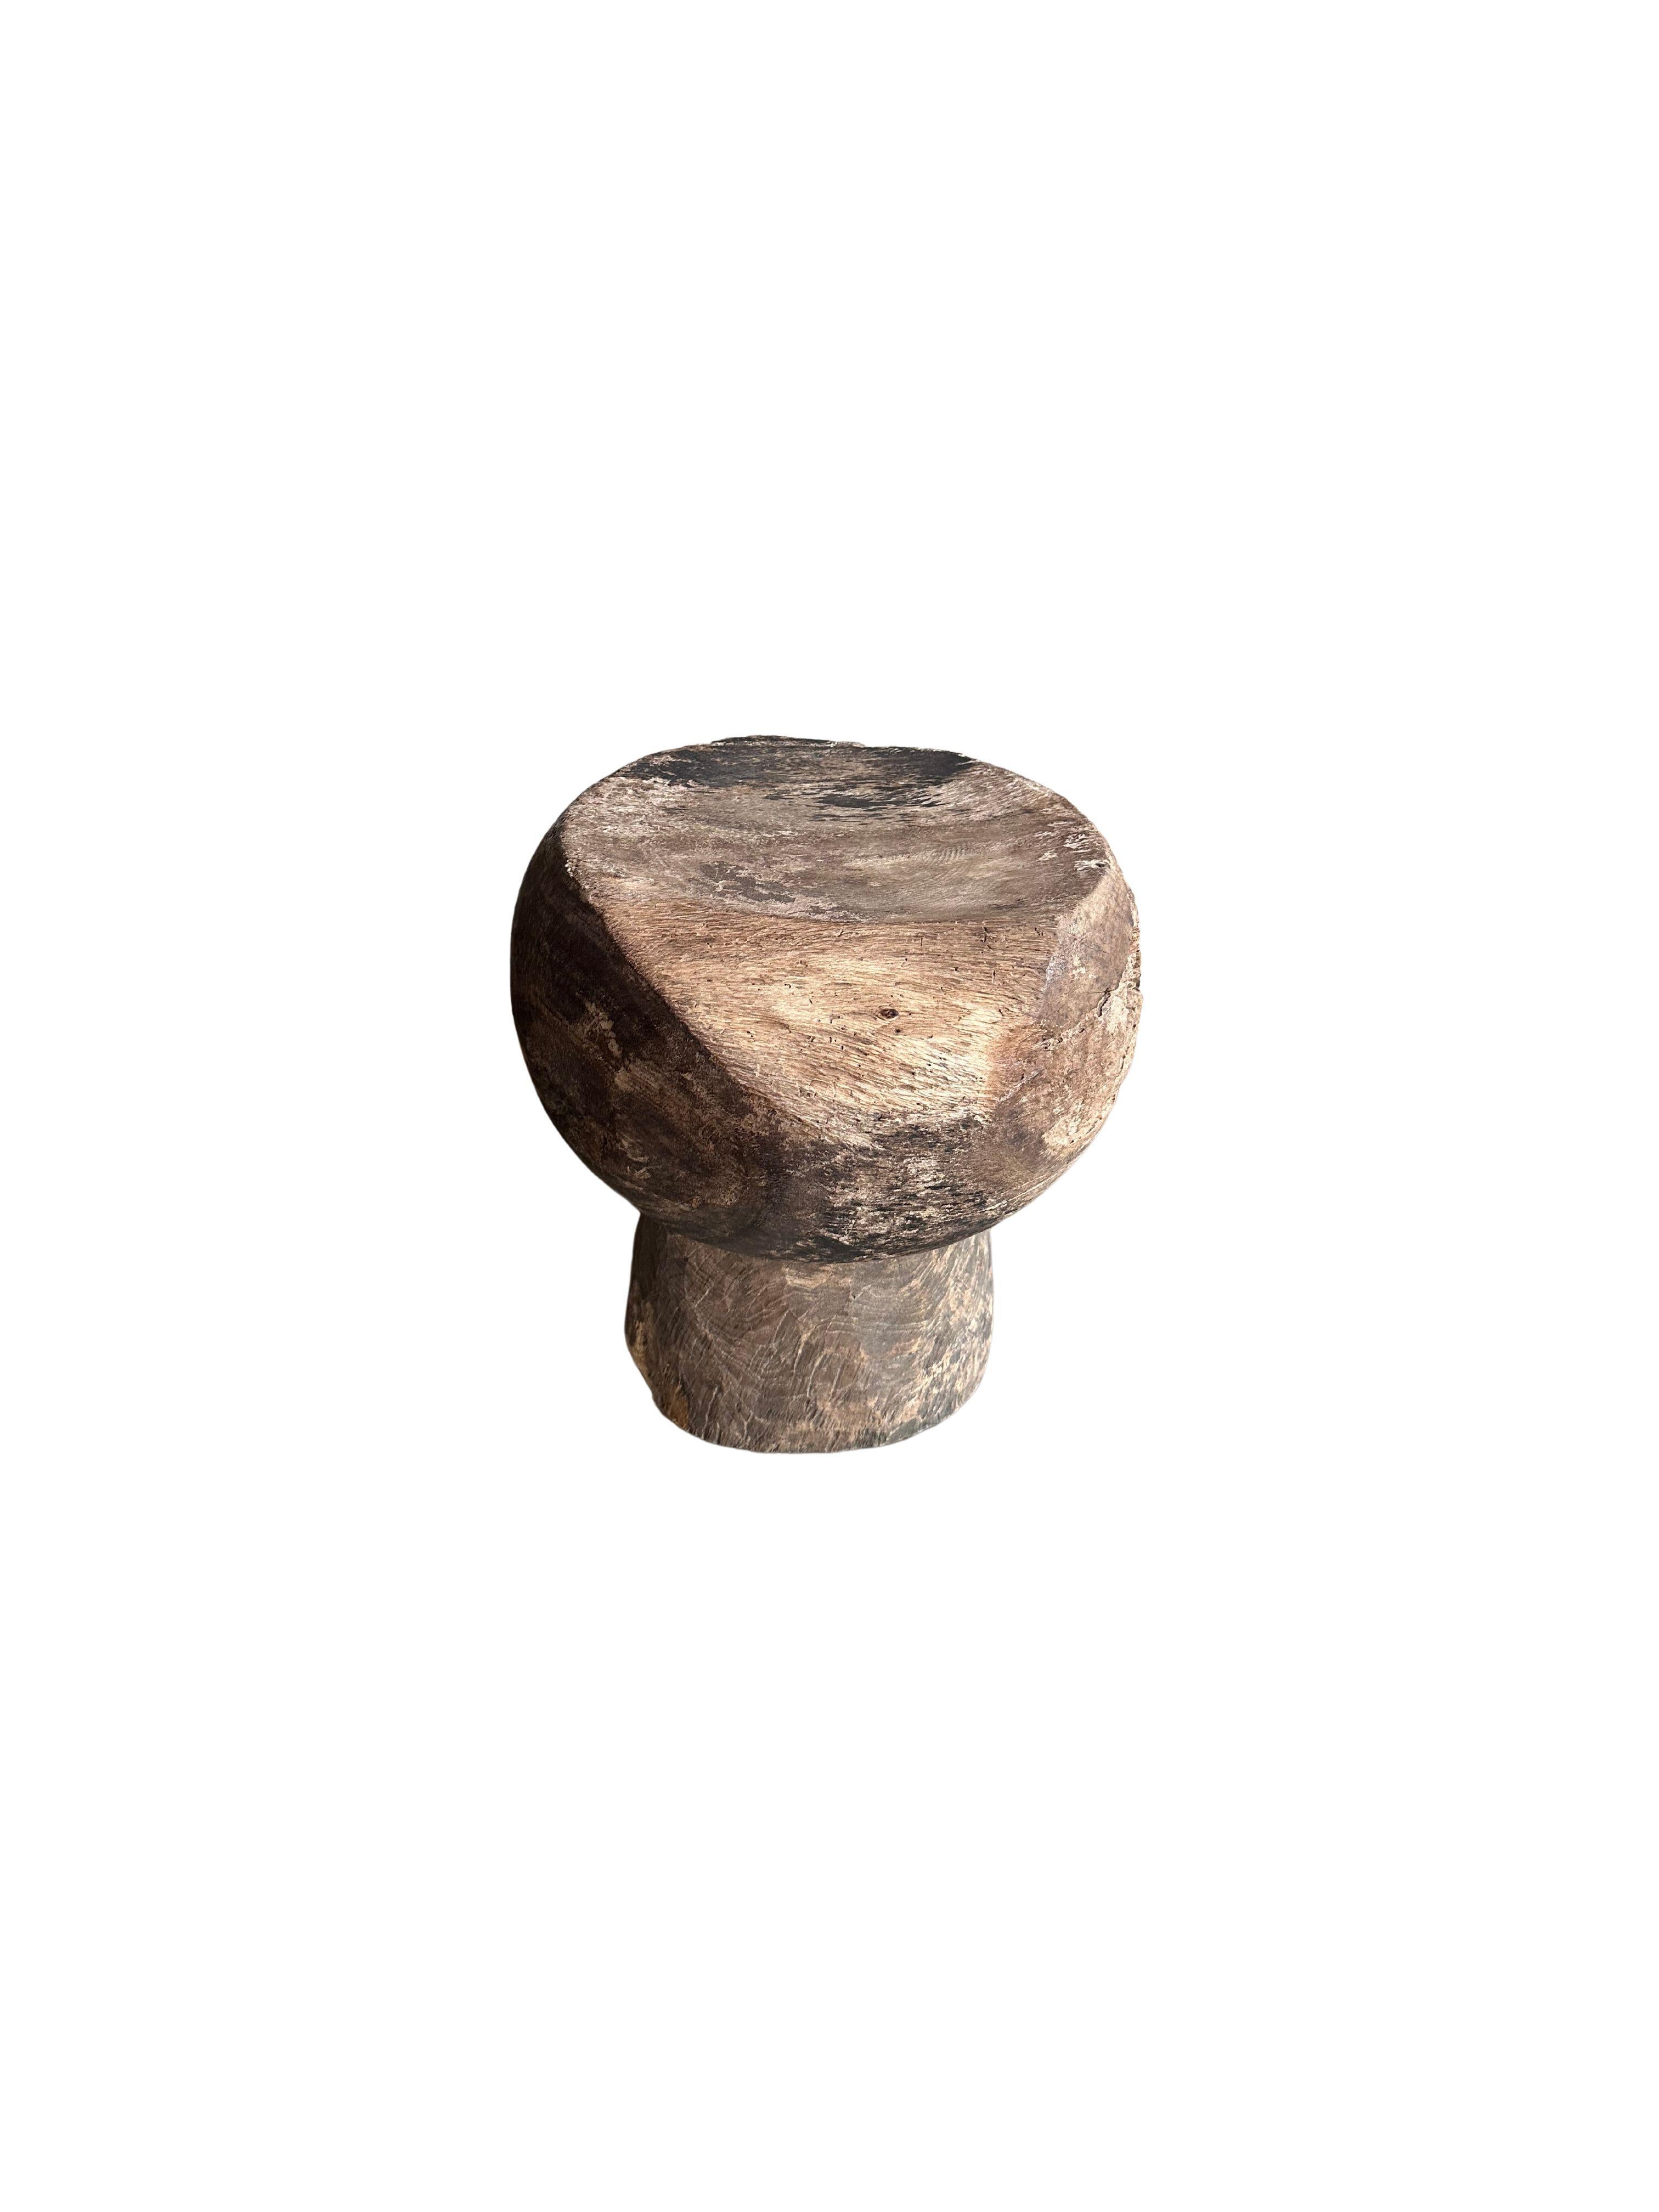 Magnifique tabouret javanais en bois de Suar présentant un éventail de textures et de nuances de bois. L'assise subtilement incurvée ajoute à son charme. Cet article présente une patine liée à l'âge qui s'est développée sur le bois. Un objet